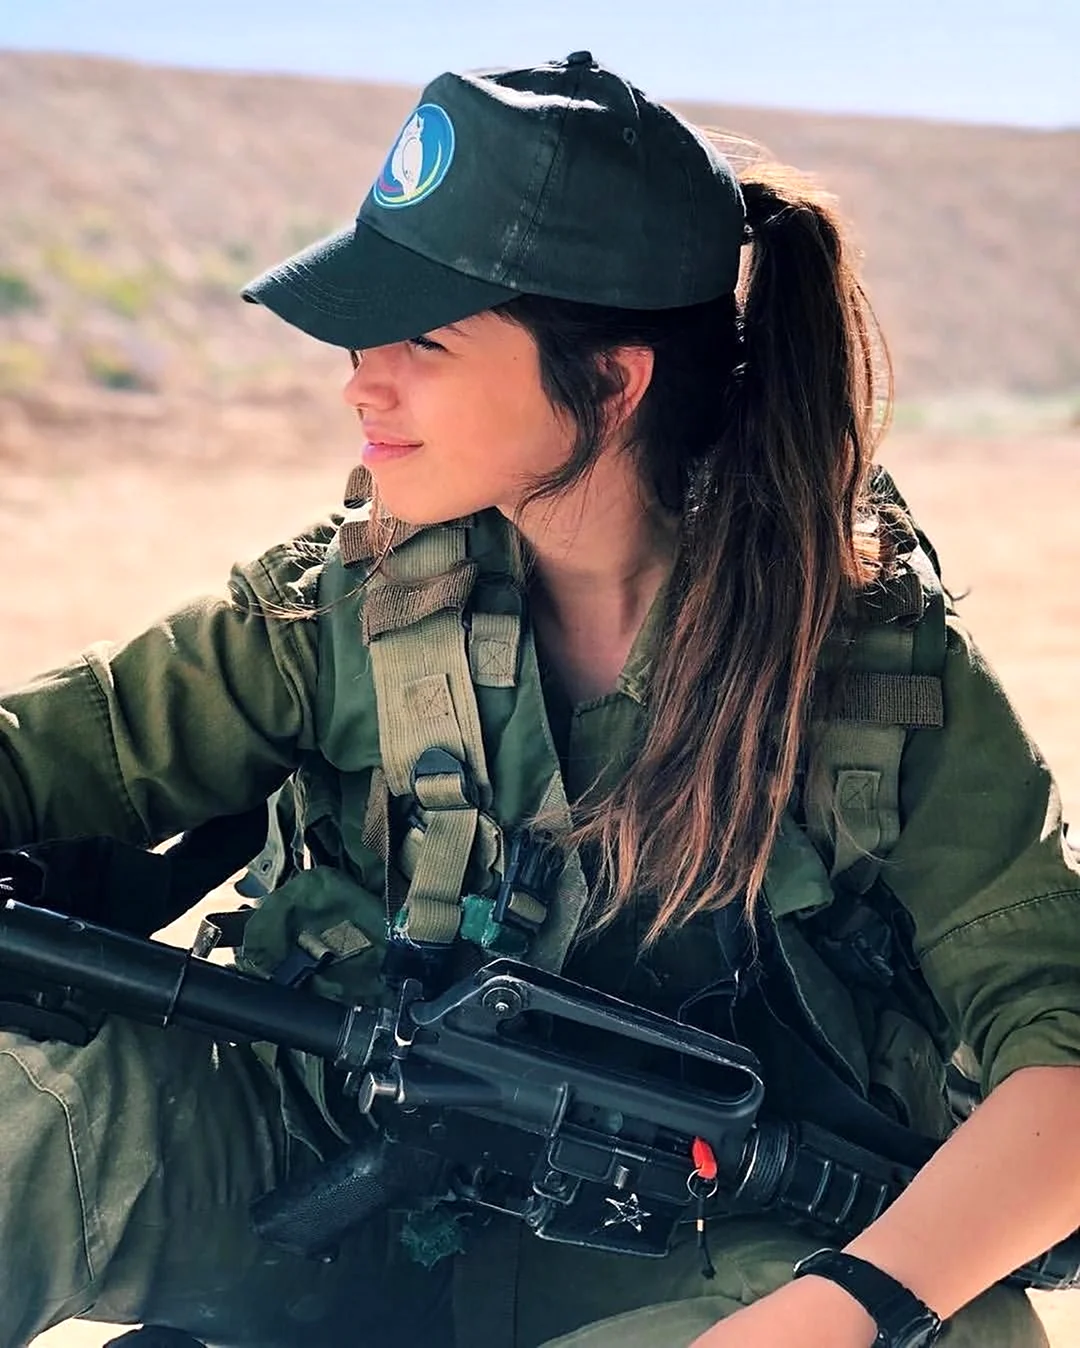 Кейт Рутман военнослужащая израильской армии